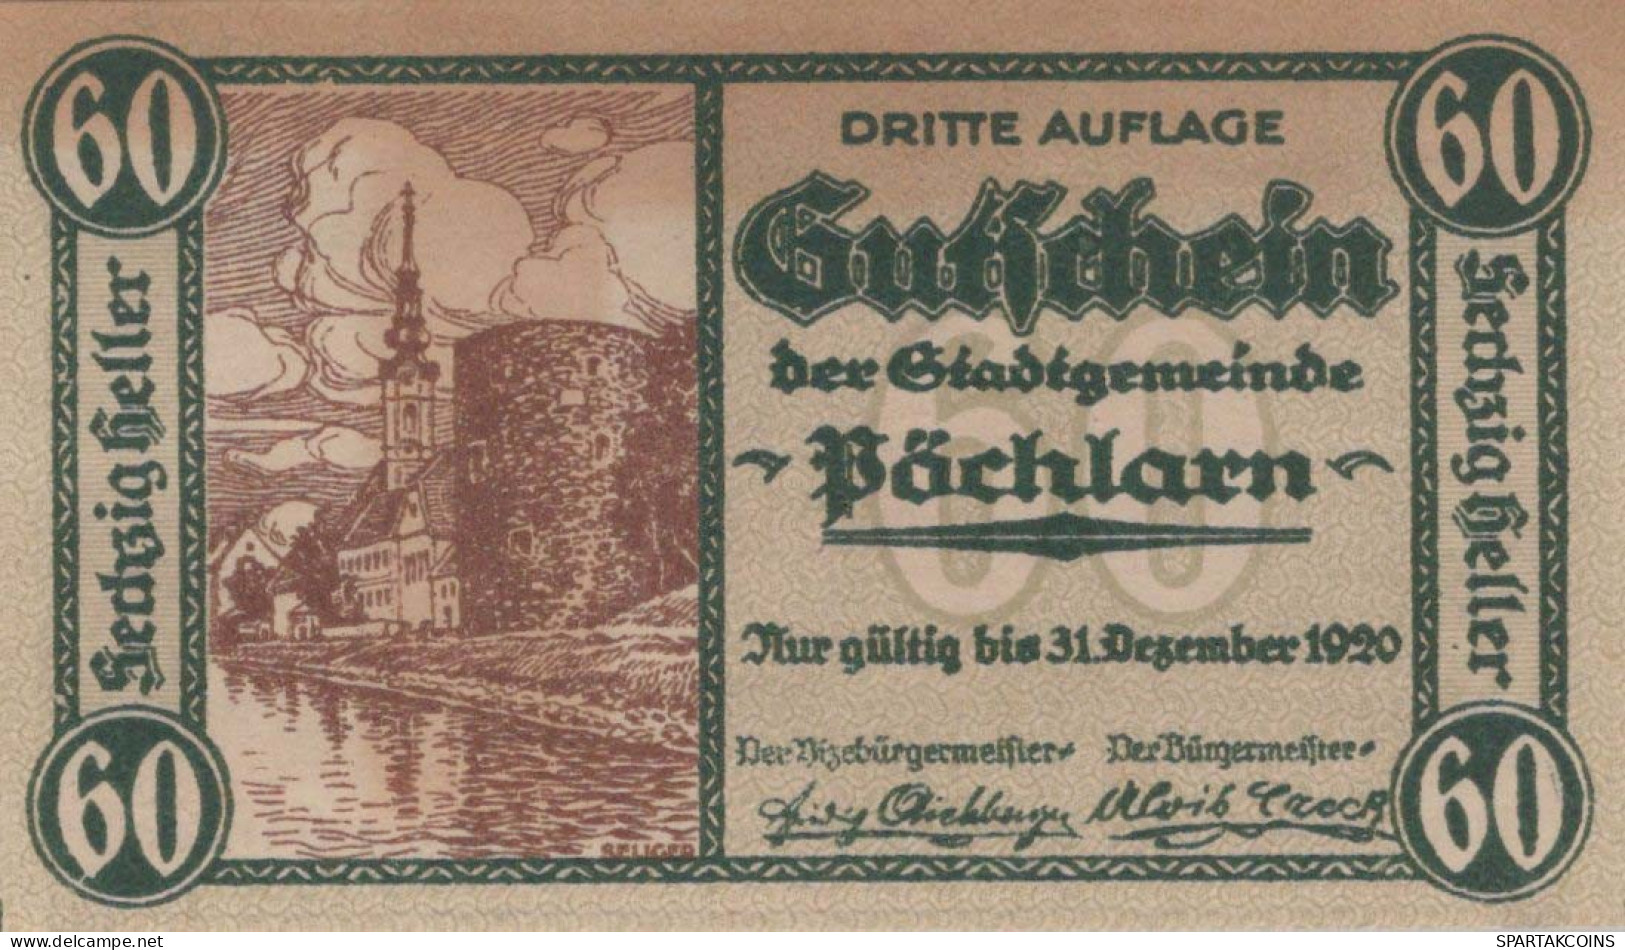 60 HELLER 1920 Stadt PoCHLARN Niedrigeren Österreich Notgeld Banknote #PE304 - [11] Emisiones Locales